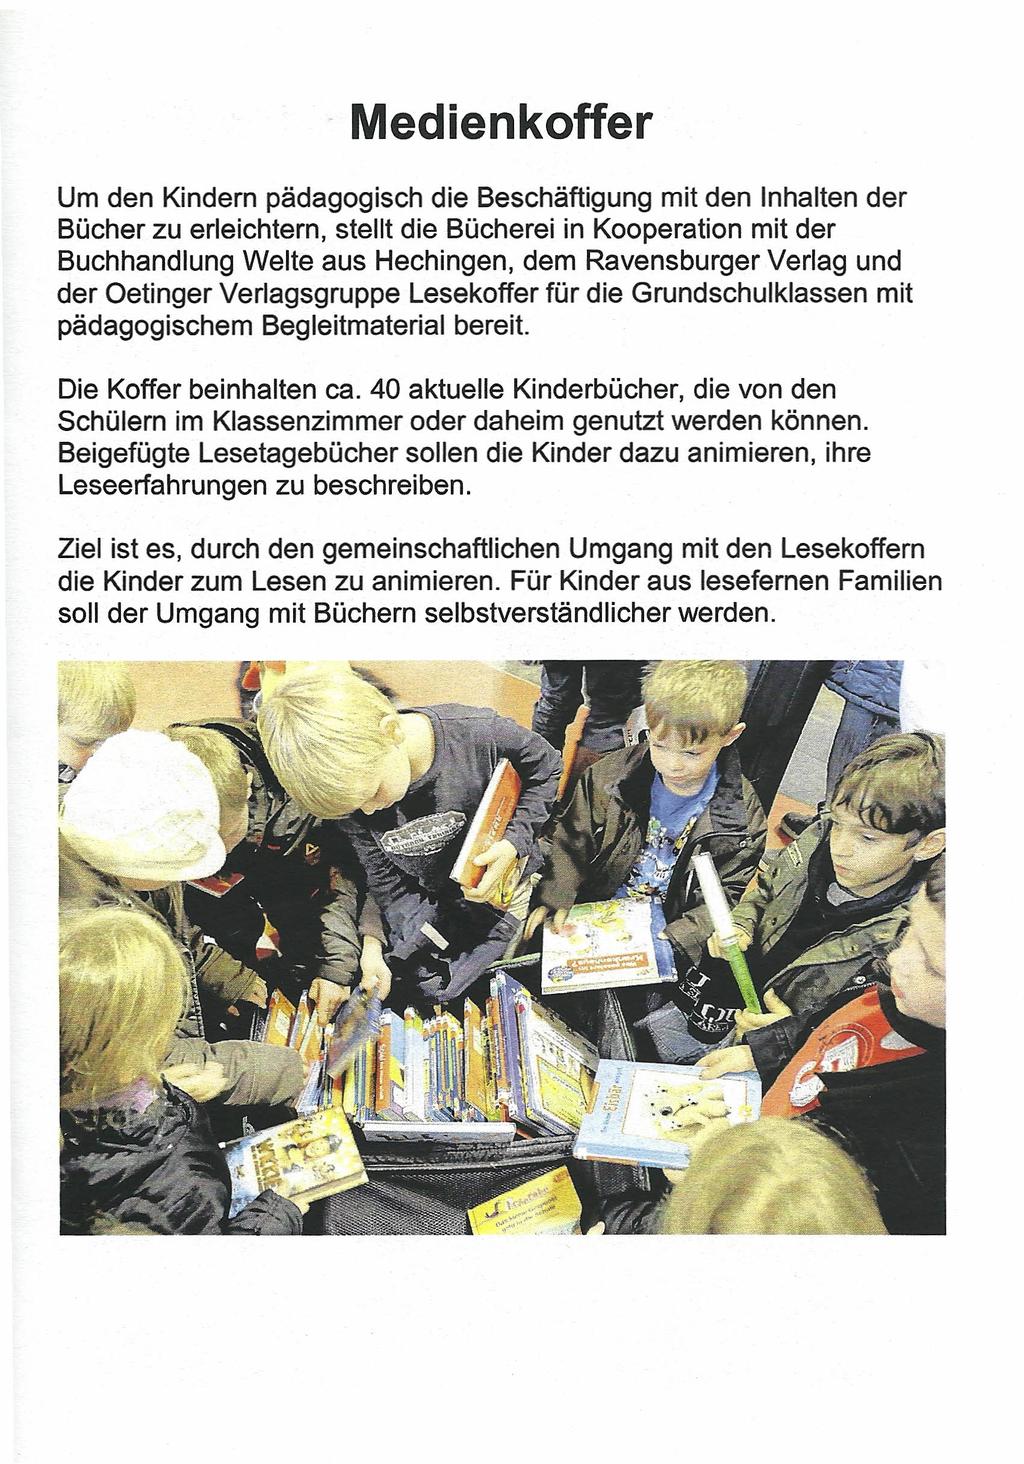 Medienkoffer Um den Kindern pädagogisch die Beschäftigung mit den Inhalten der Bücher zu erleichtern, stellt die Bücherei in Kooperation mit der Buchhandlung Weite aus Hechingen, dem Ravensburger